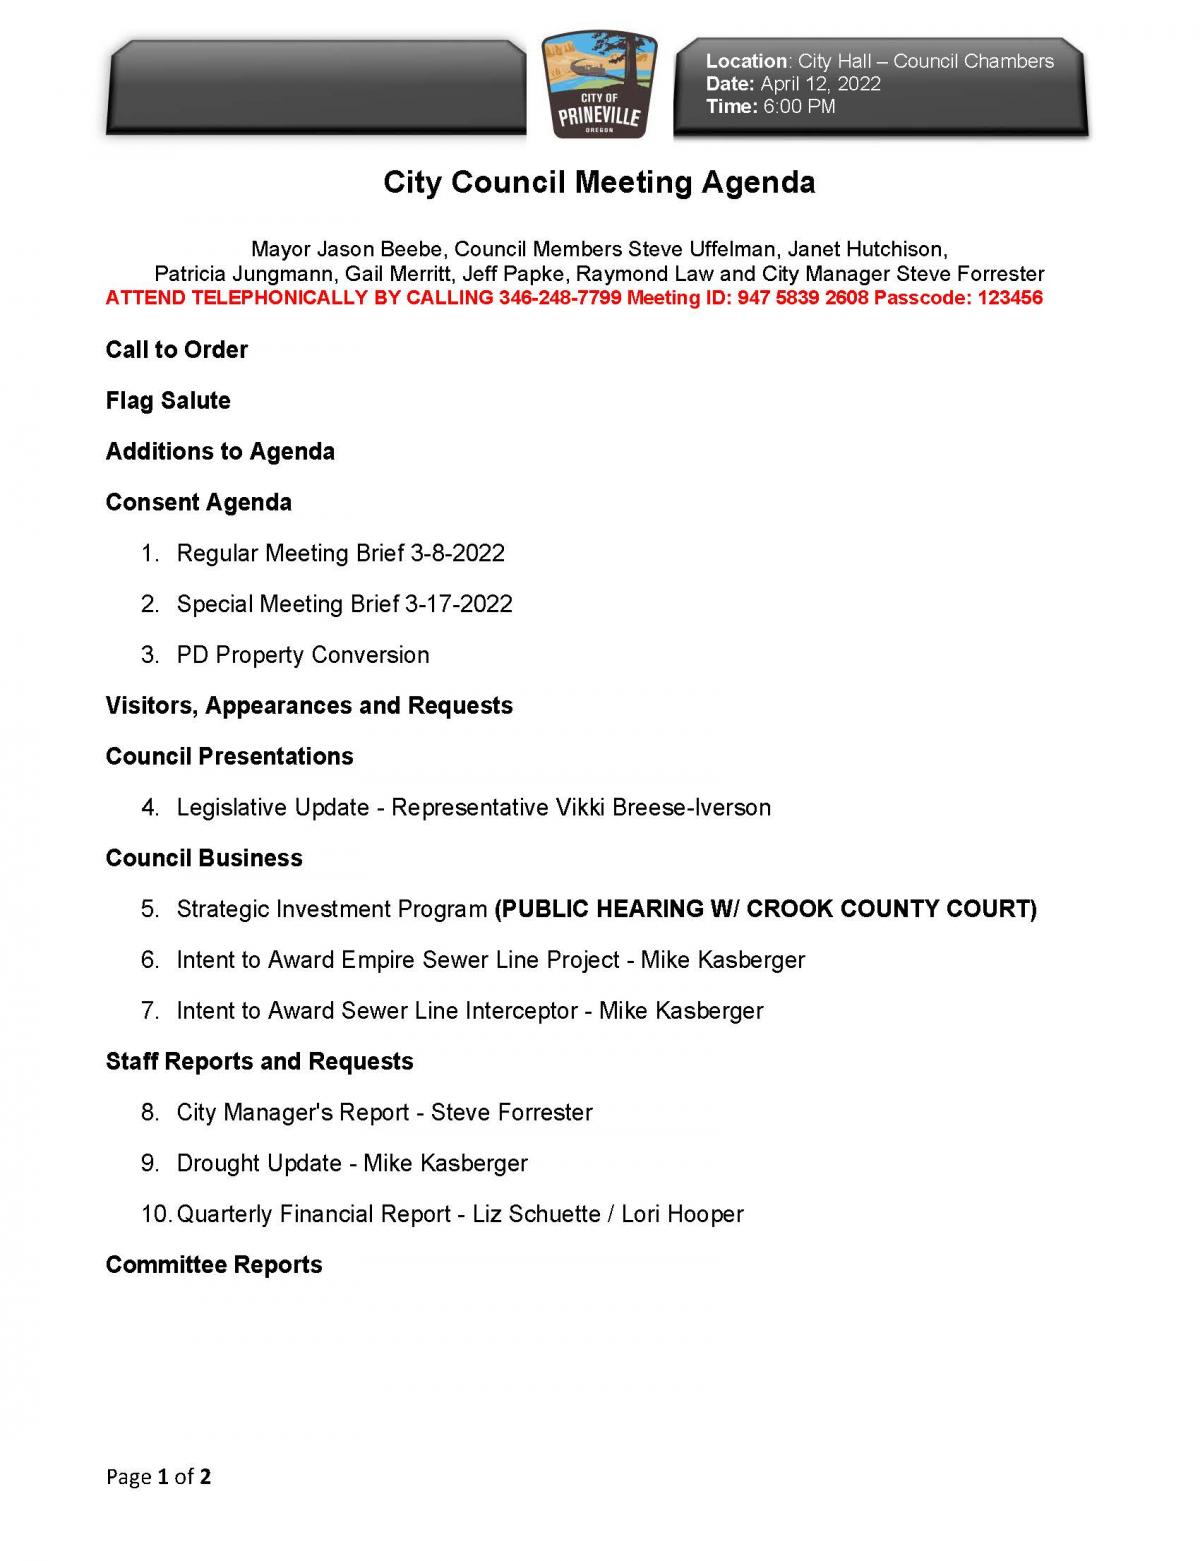 Page 1 Council Agenda 4-12-2022